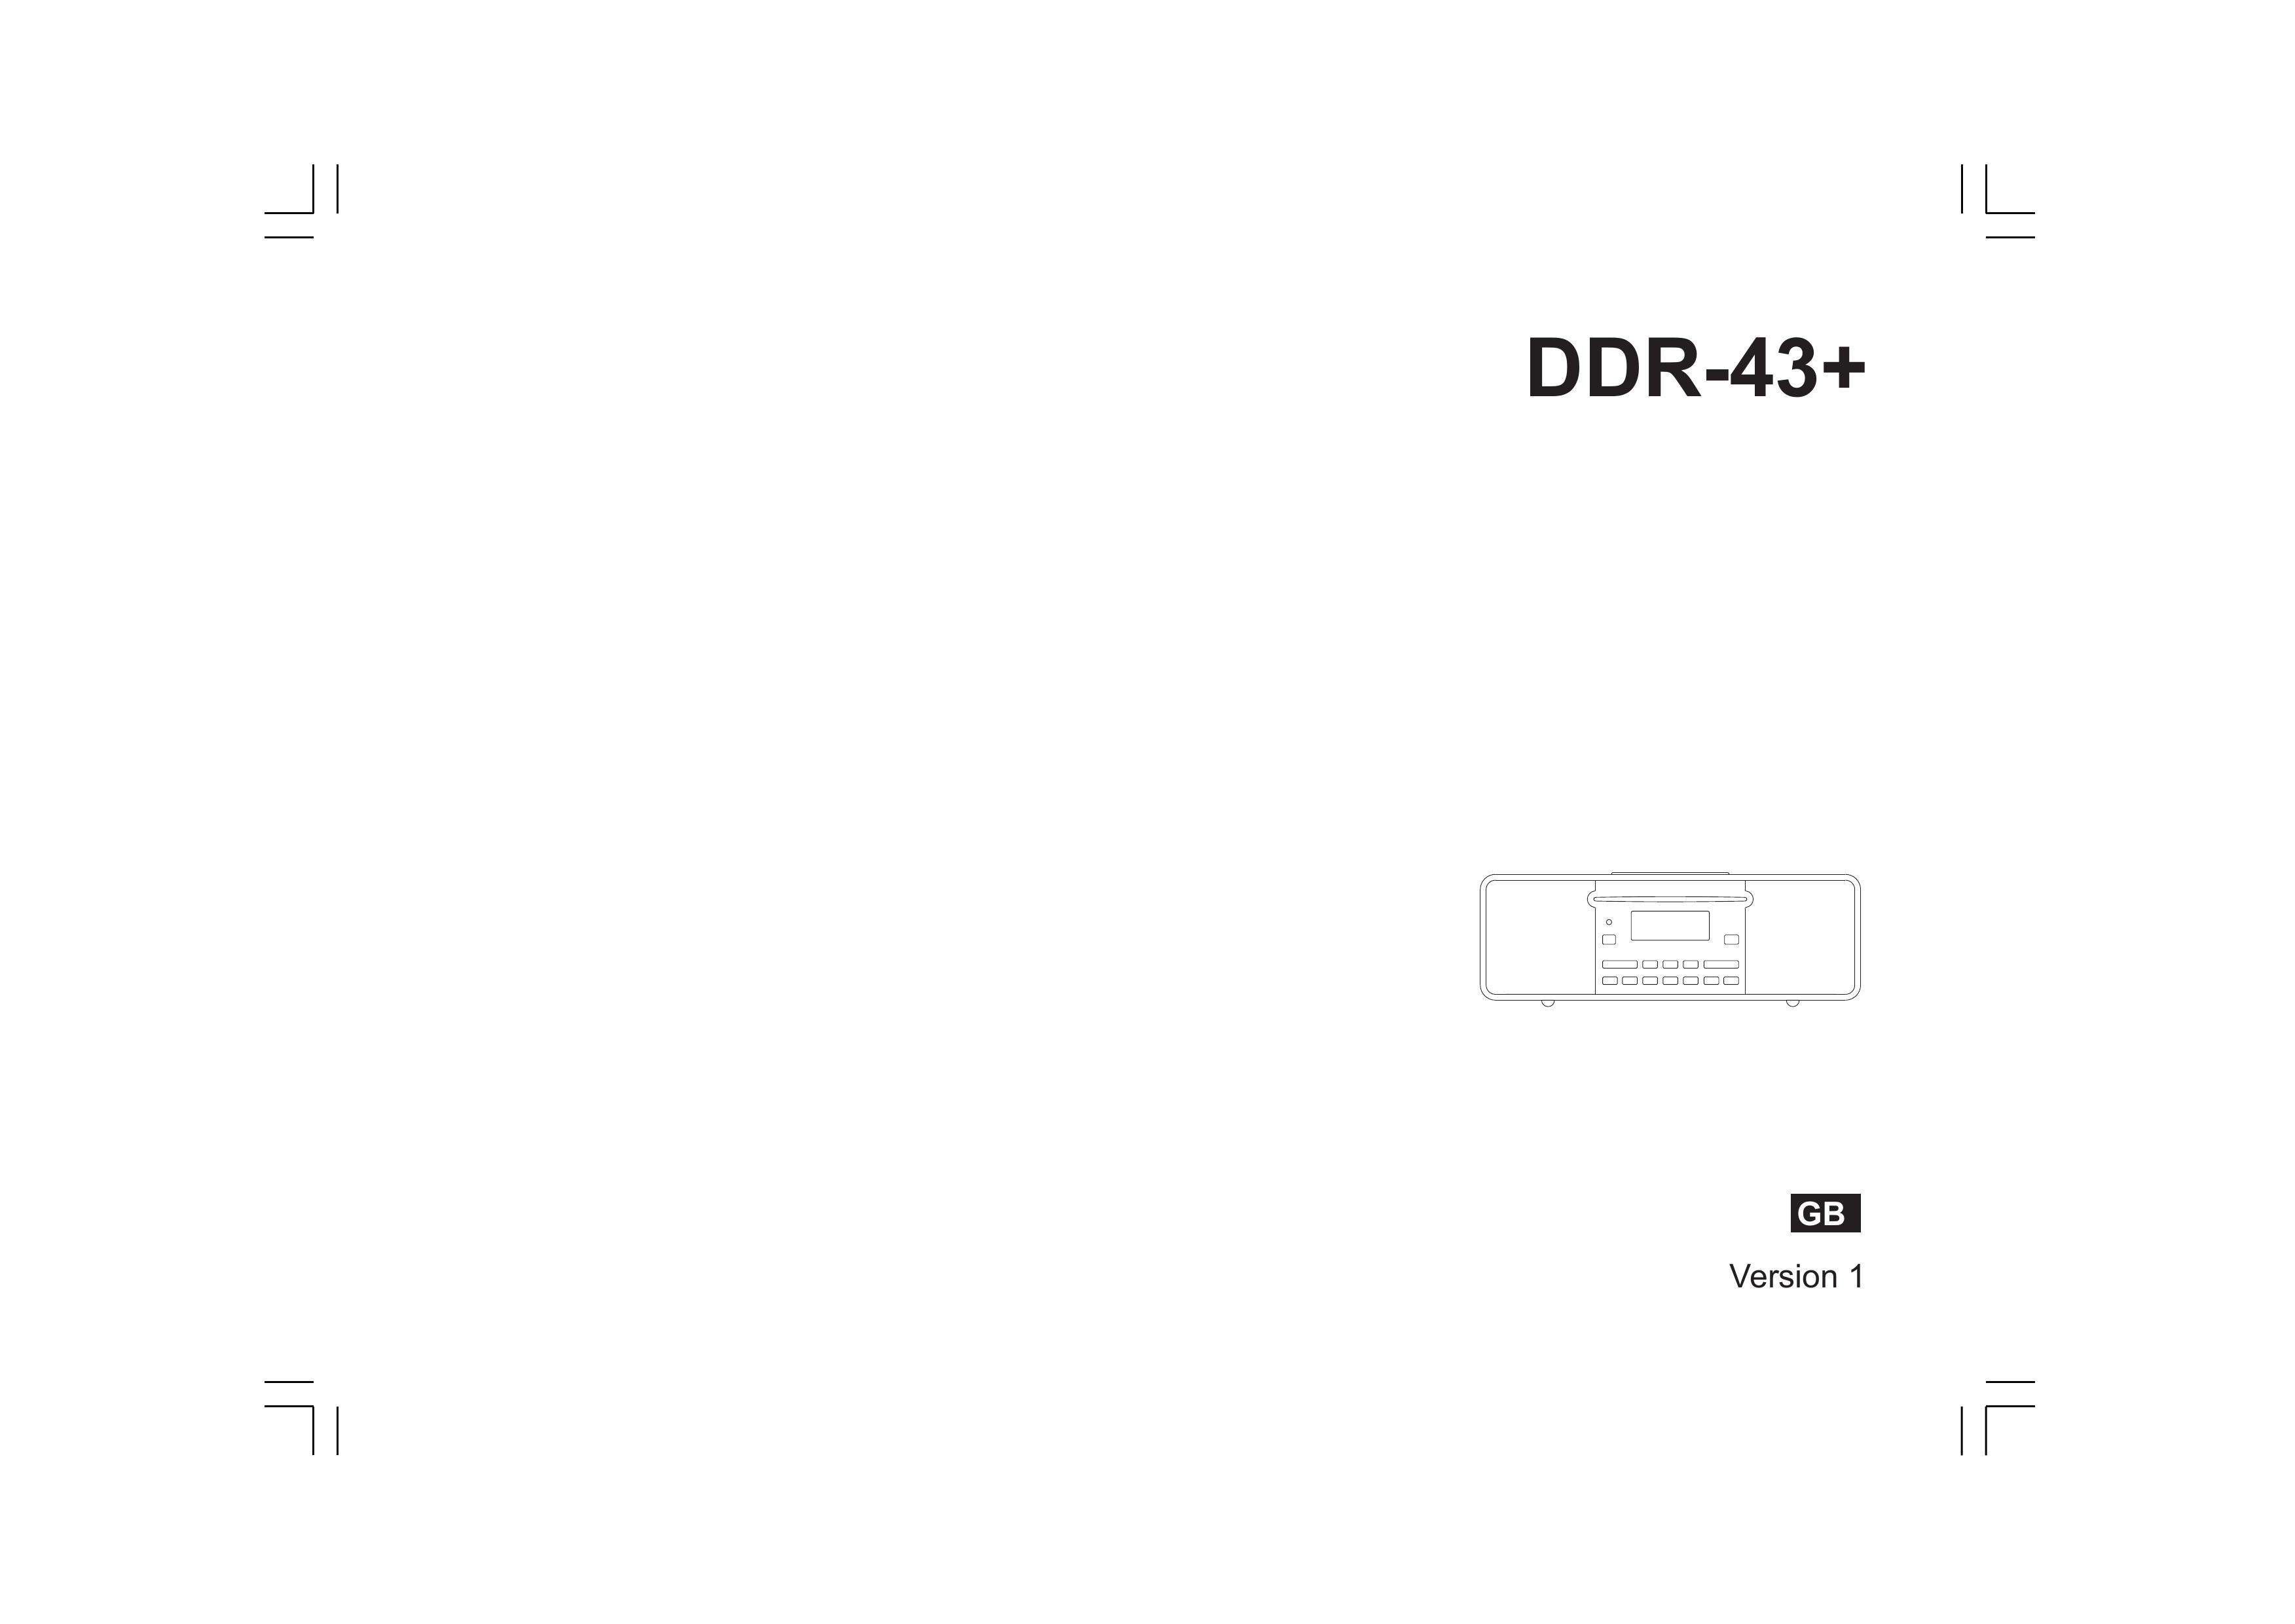 Apple DDR-43+ MP3 Docking Station User Manual